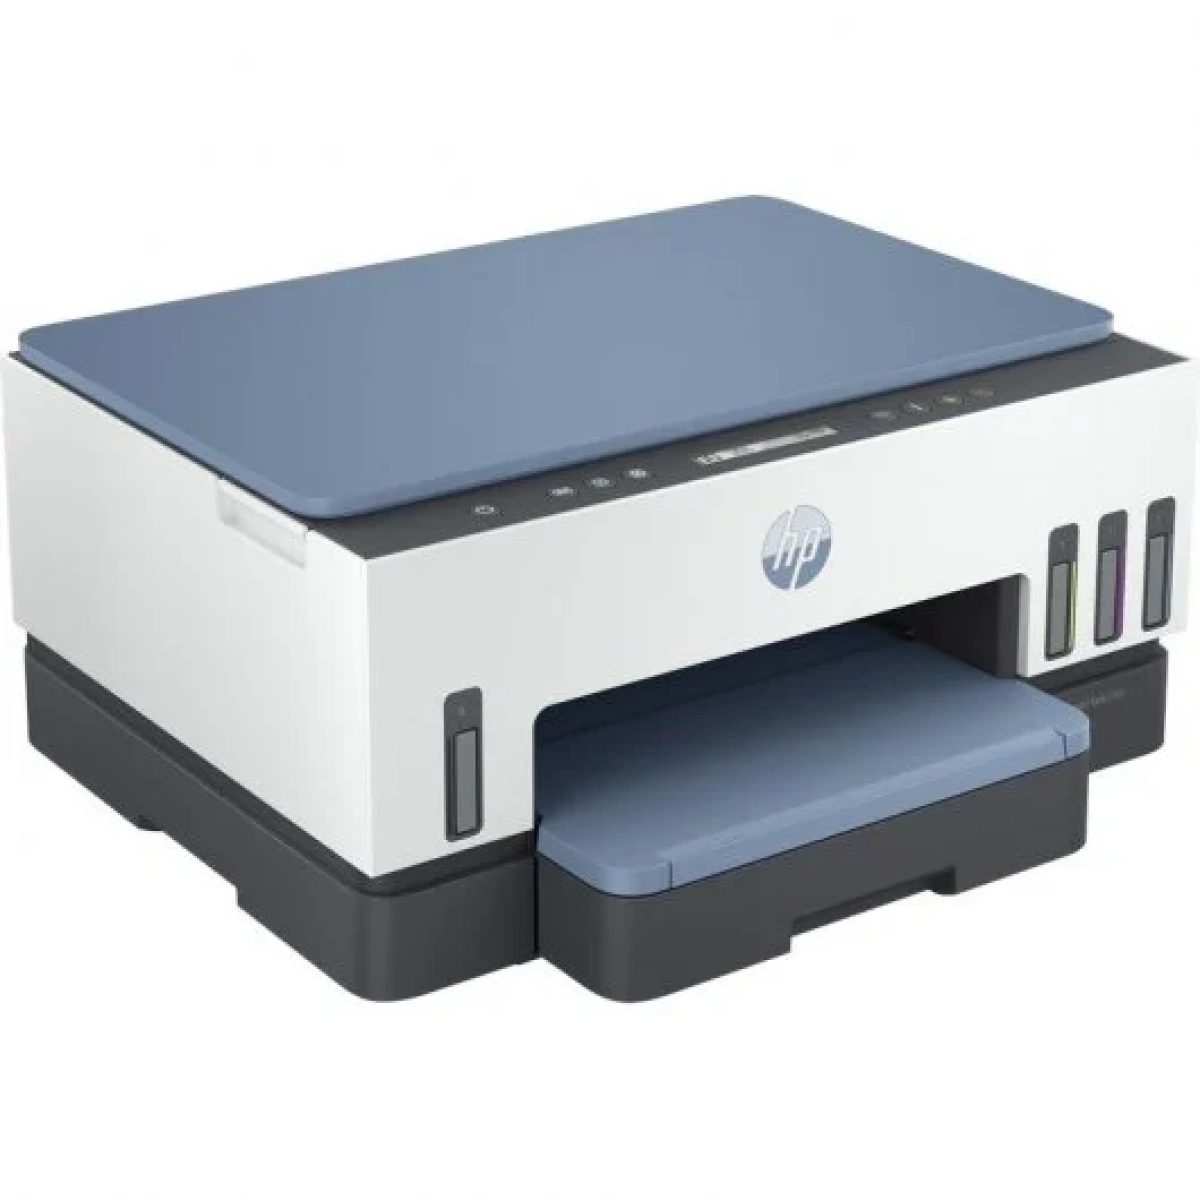 2786 hp smart tank 7006 impresora multifuncion color duplex wifi especificaciones